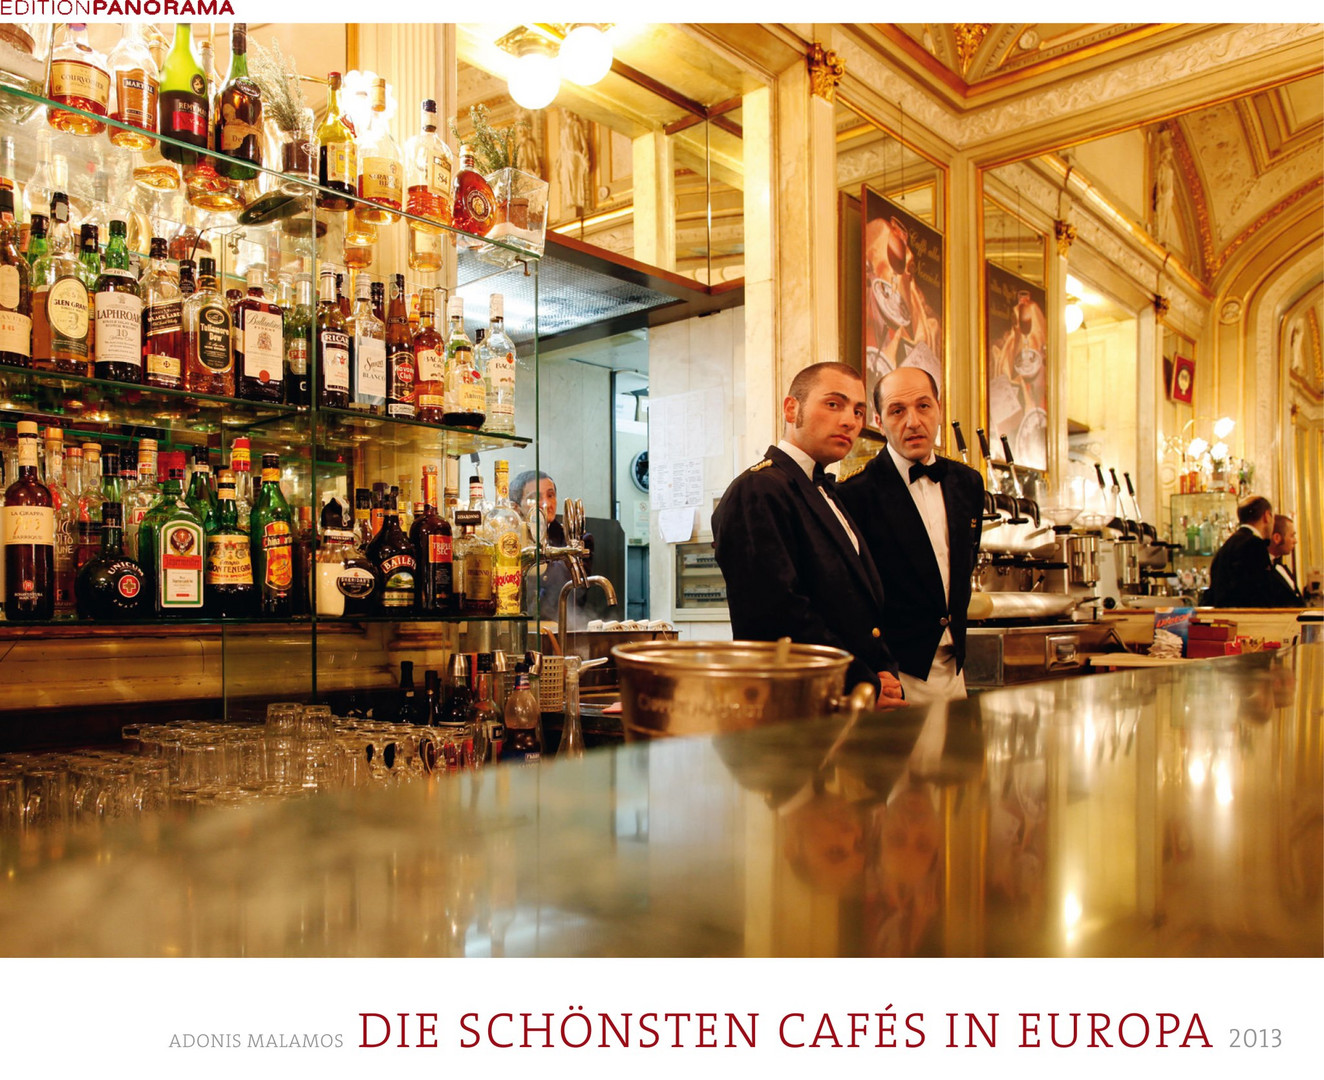 DIE SCHÖNSTEN CAFES IN EUROPA